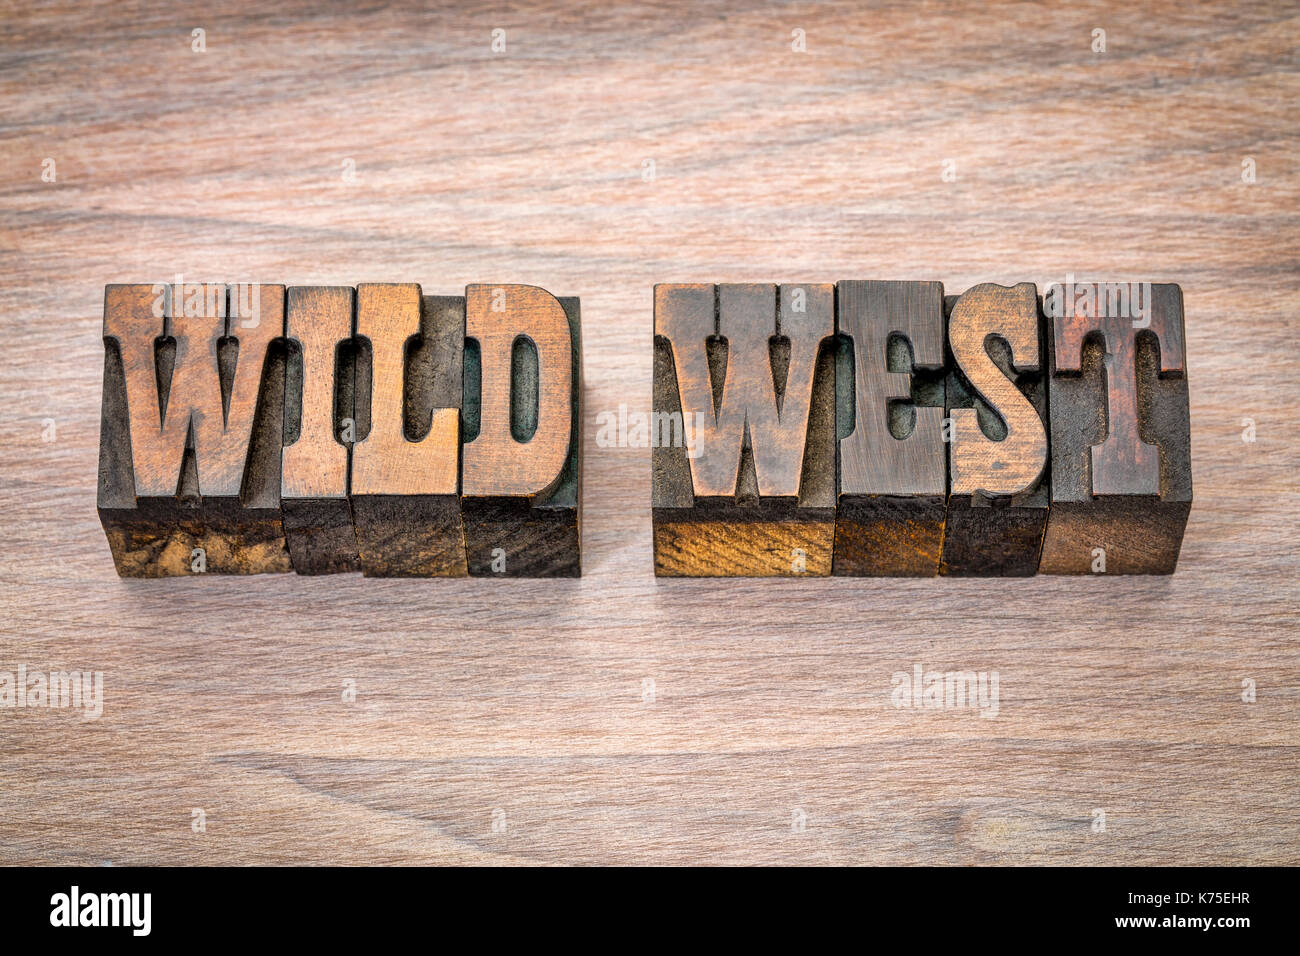 Wild West banner - Texto en tipografía vintage tipo de madera - francés clarendon font popular en películas occidentales y memorabilia Foto de stock